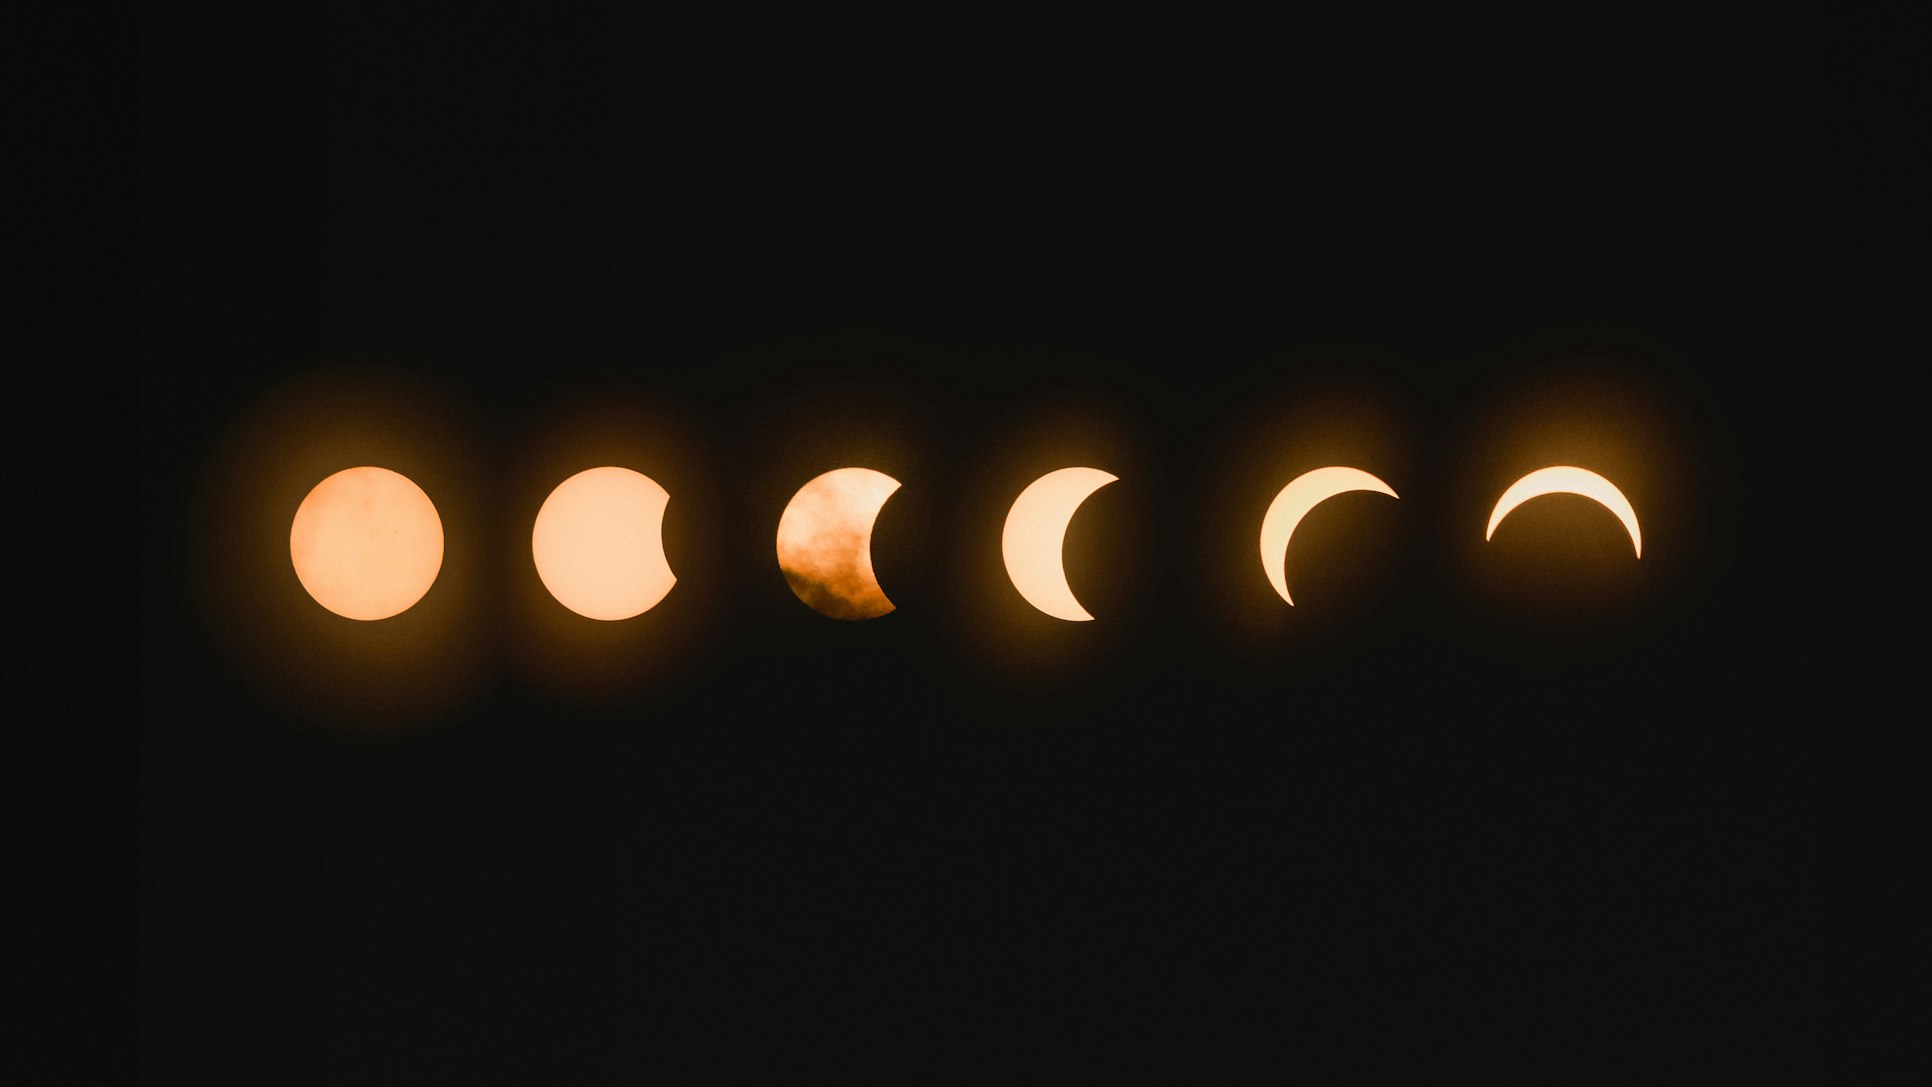 Solar Eclipse progression